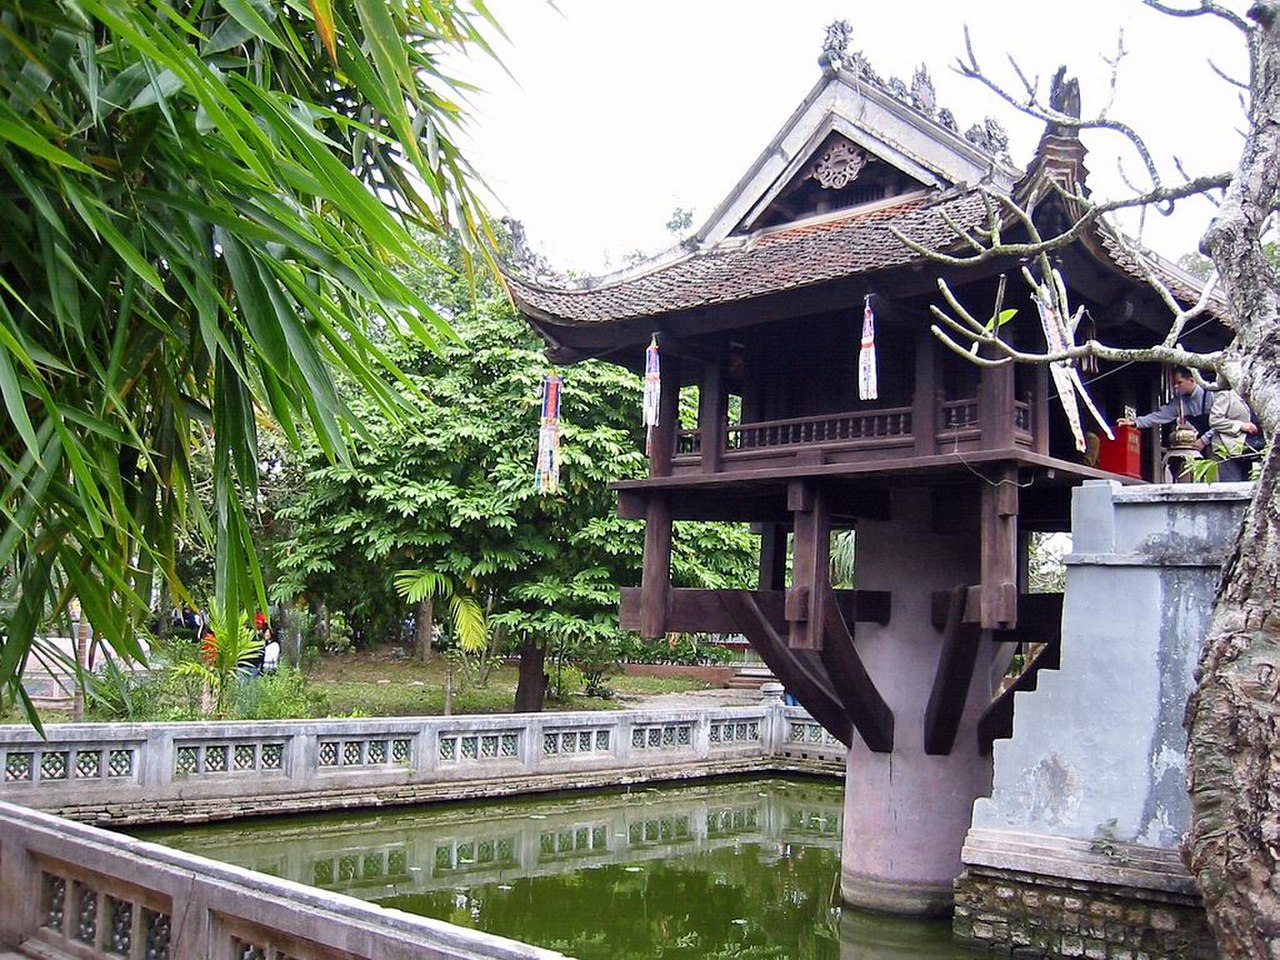 Ханой достопримечательности. ТЮА-мот-кот Ханой. Вьетнам пагода на одном столбе. Пагода на одном столбе Ханой. Вьетнам пагода на одном столбе (г. Ханой).